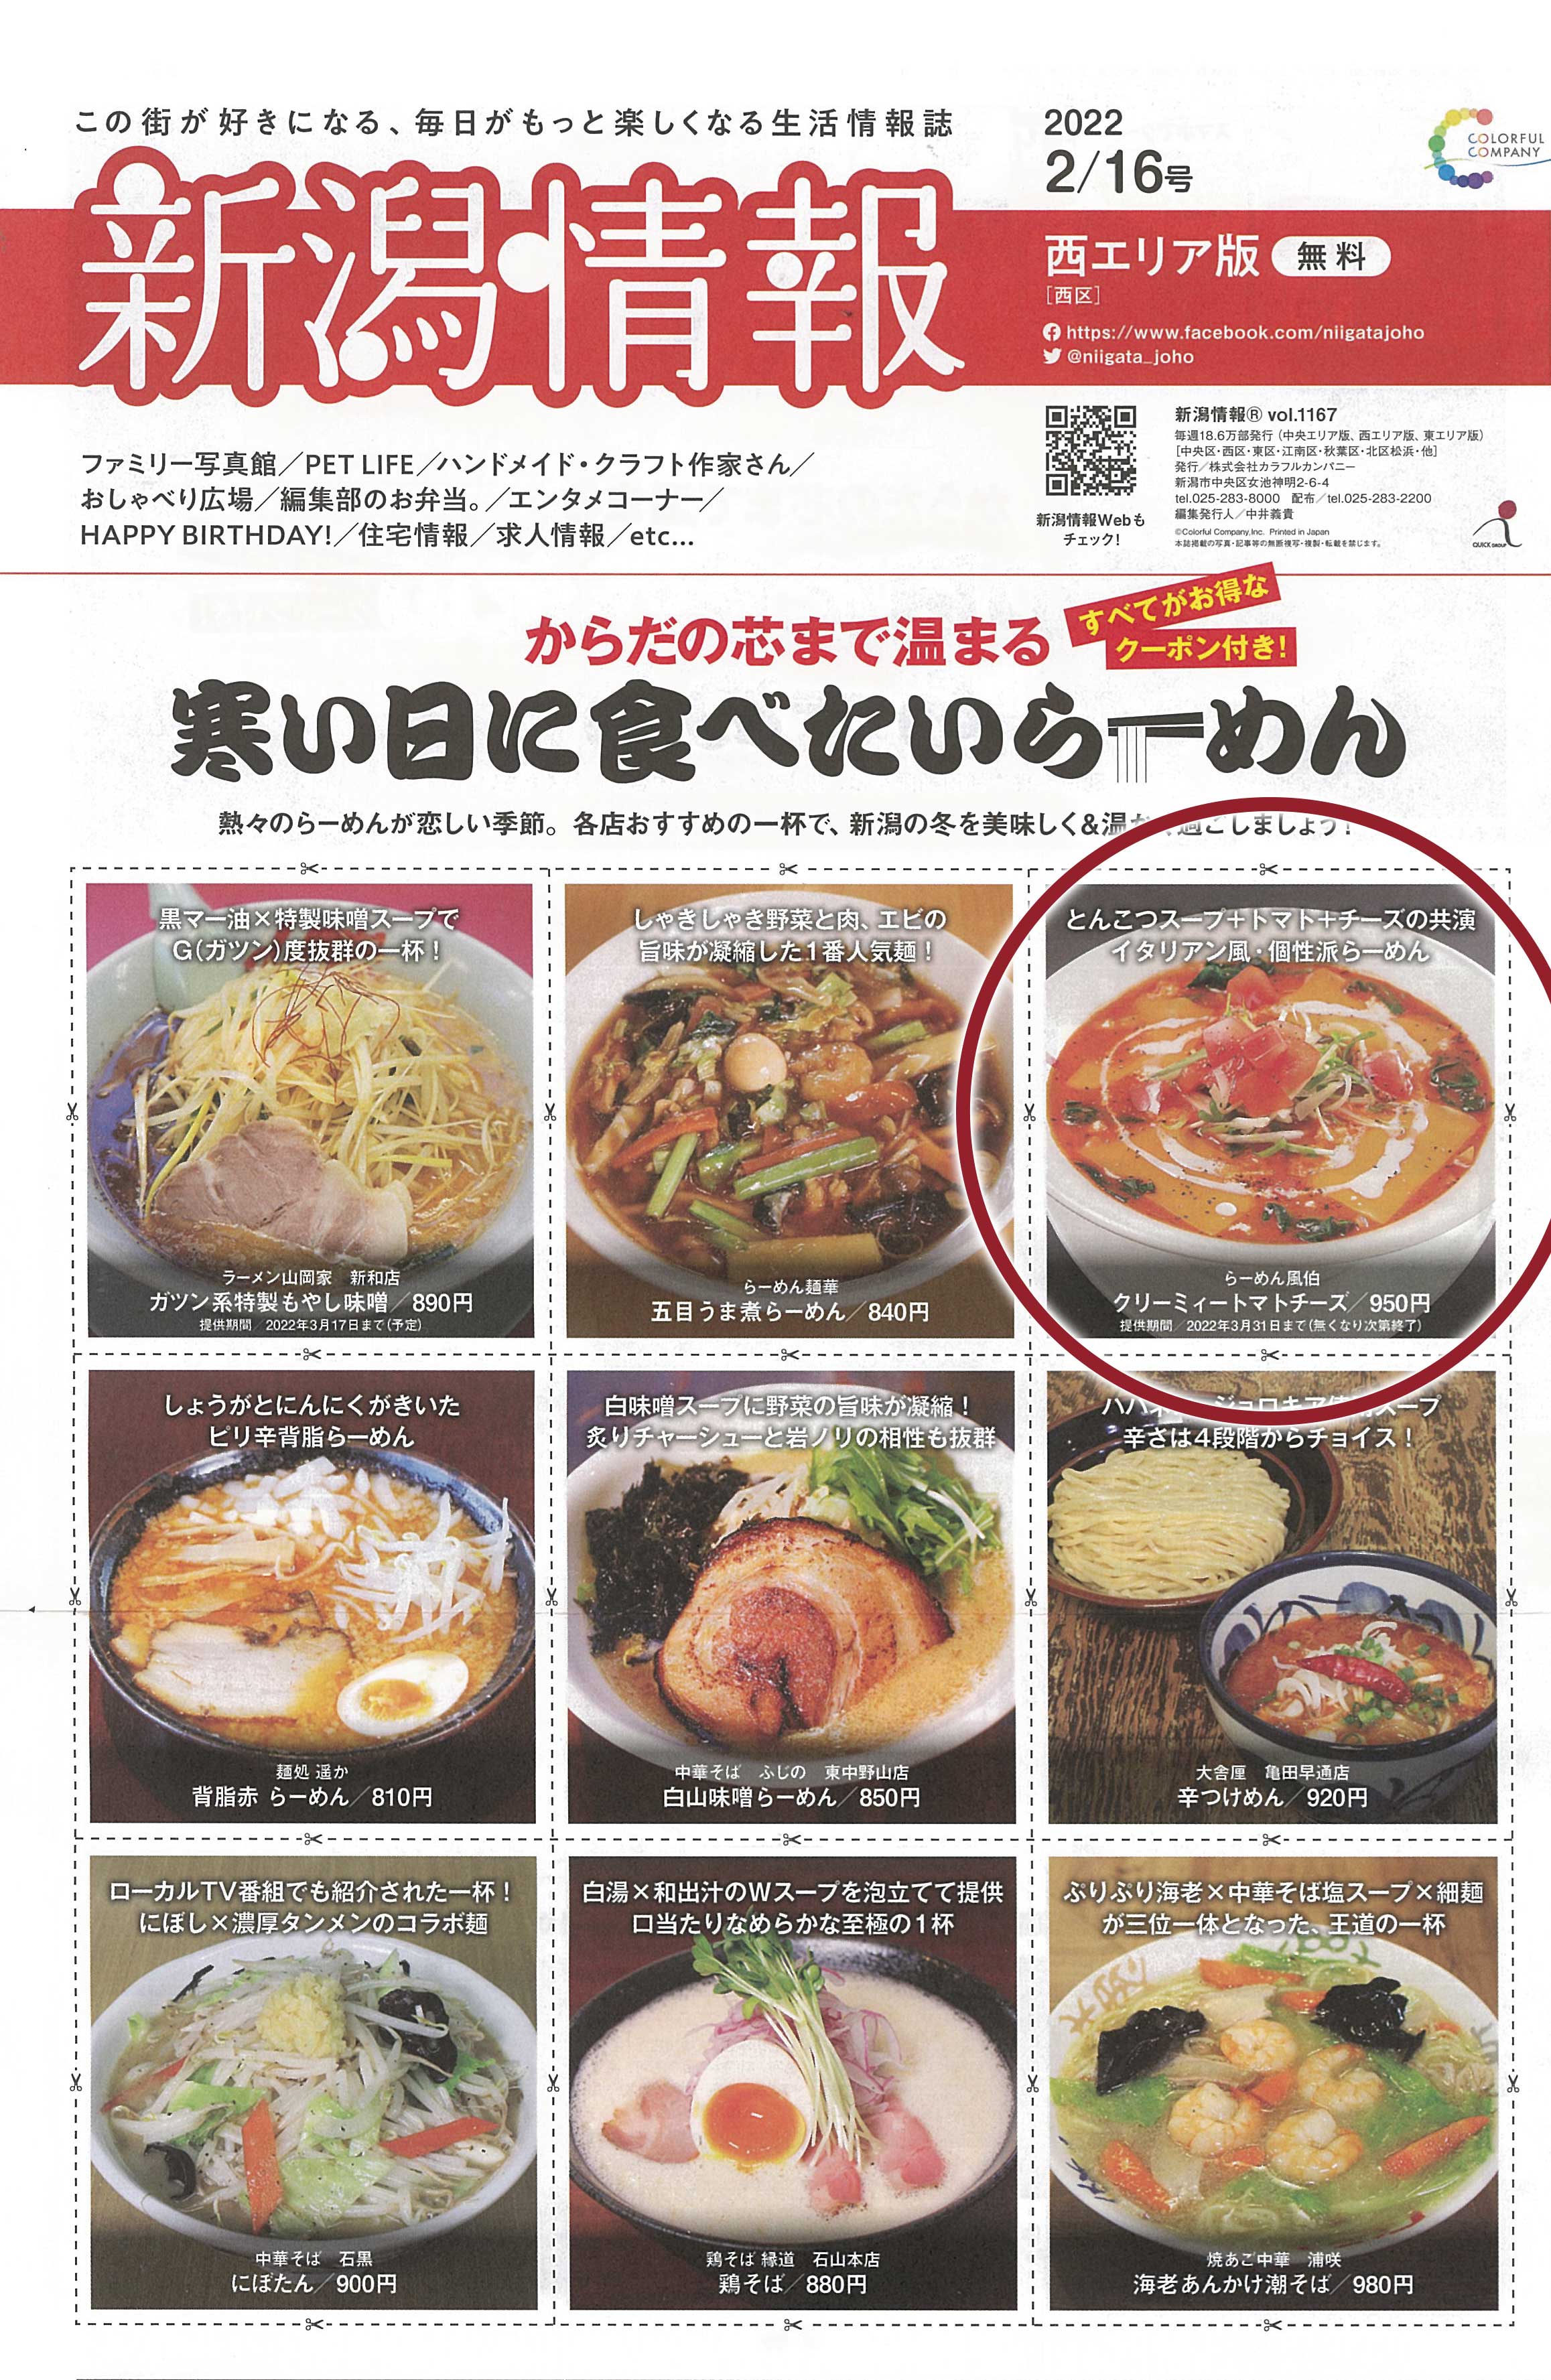 2月16日号新潟情報「寒い日に食べたいらーめん」特集